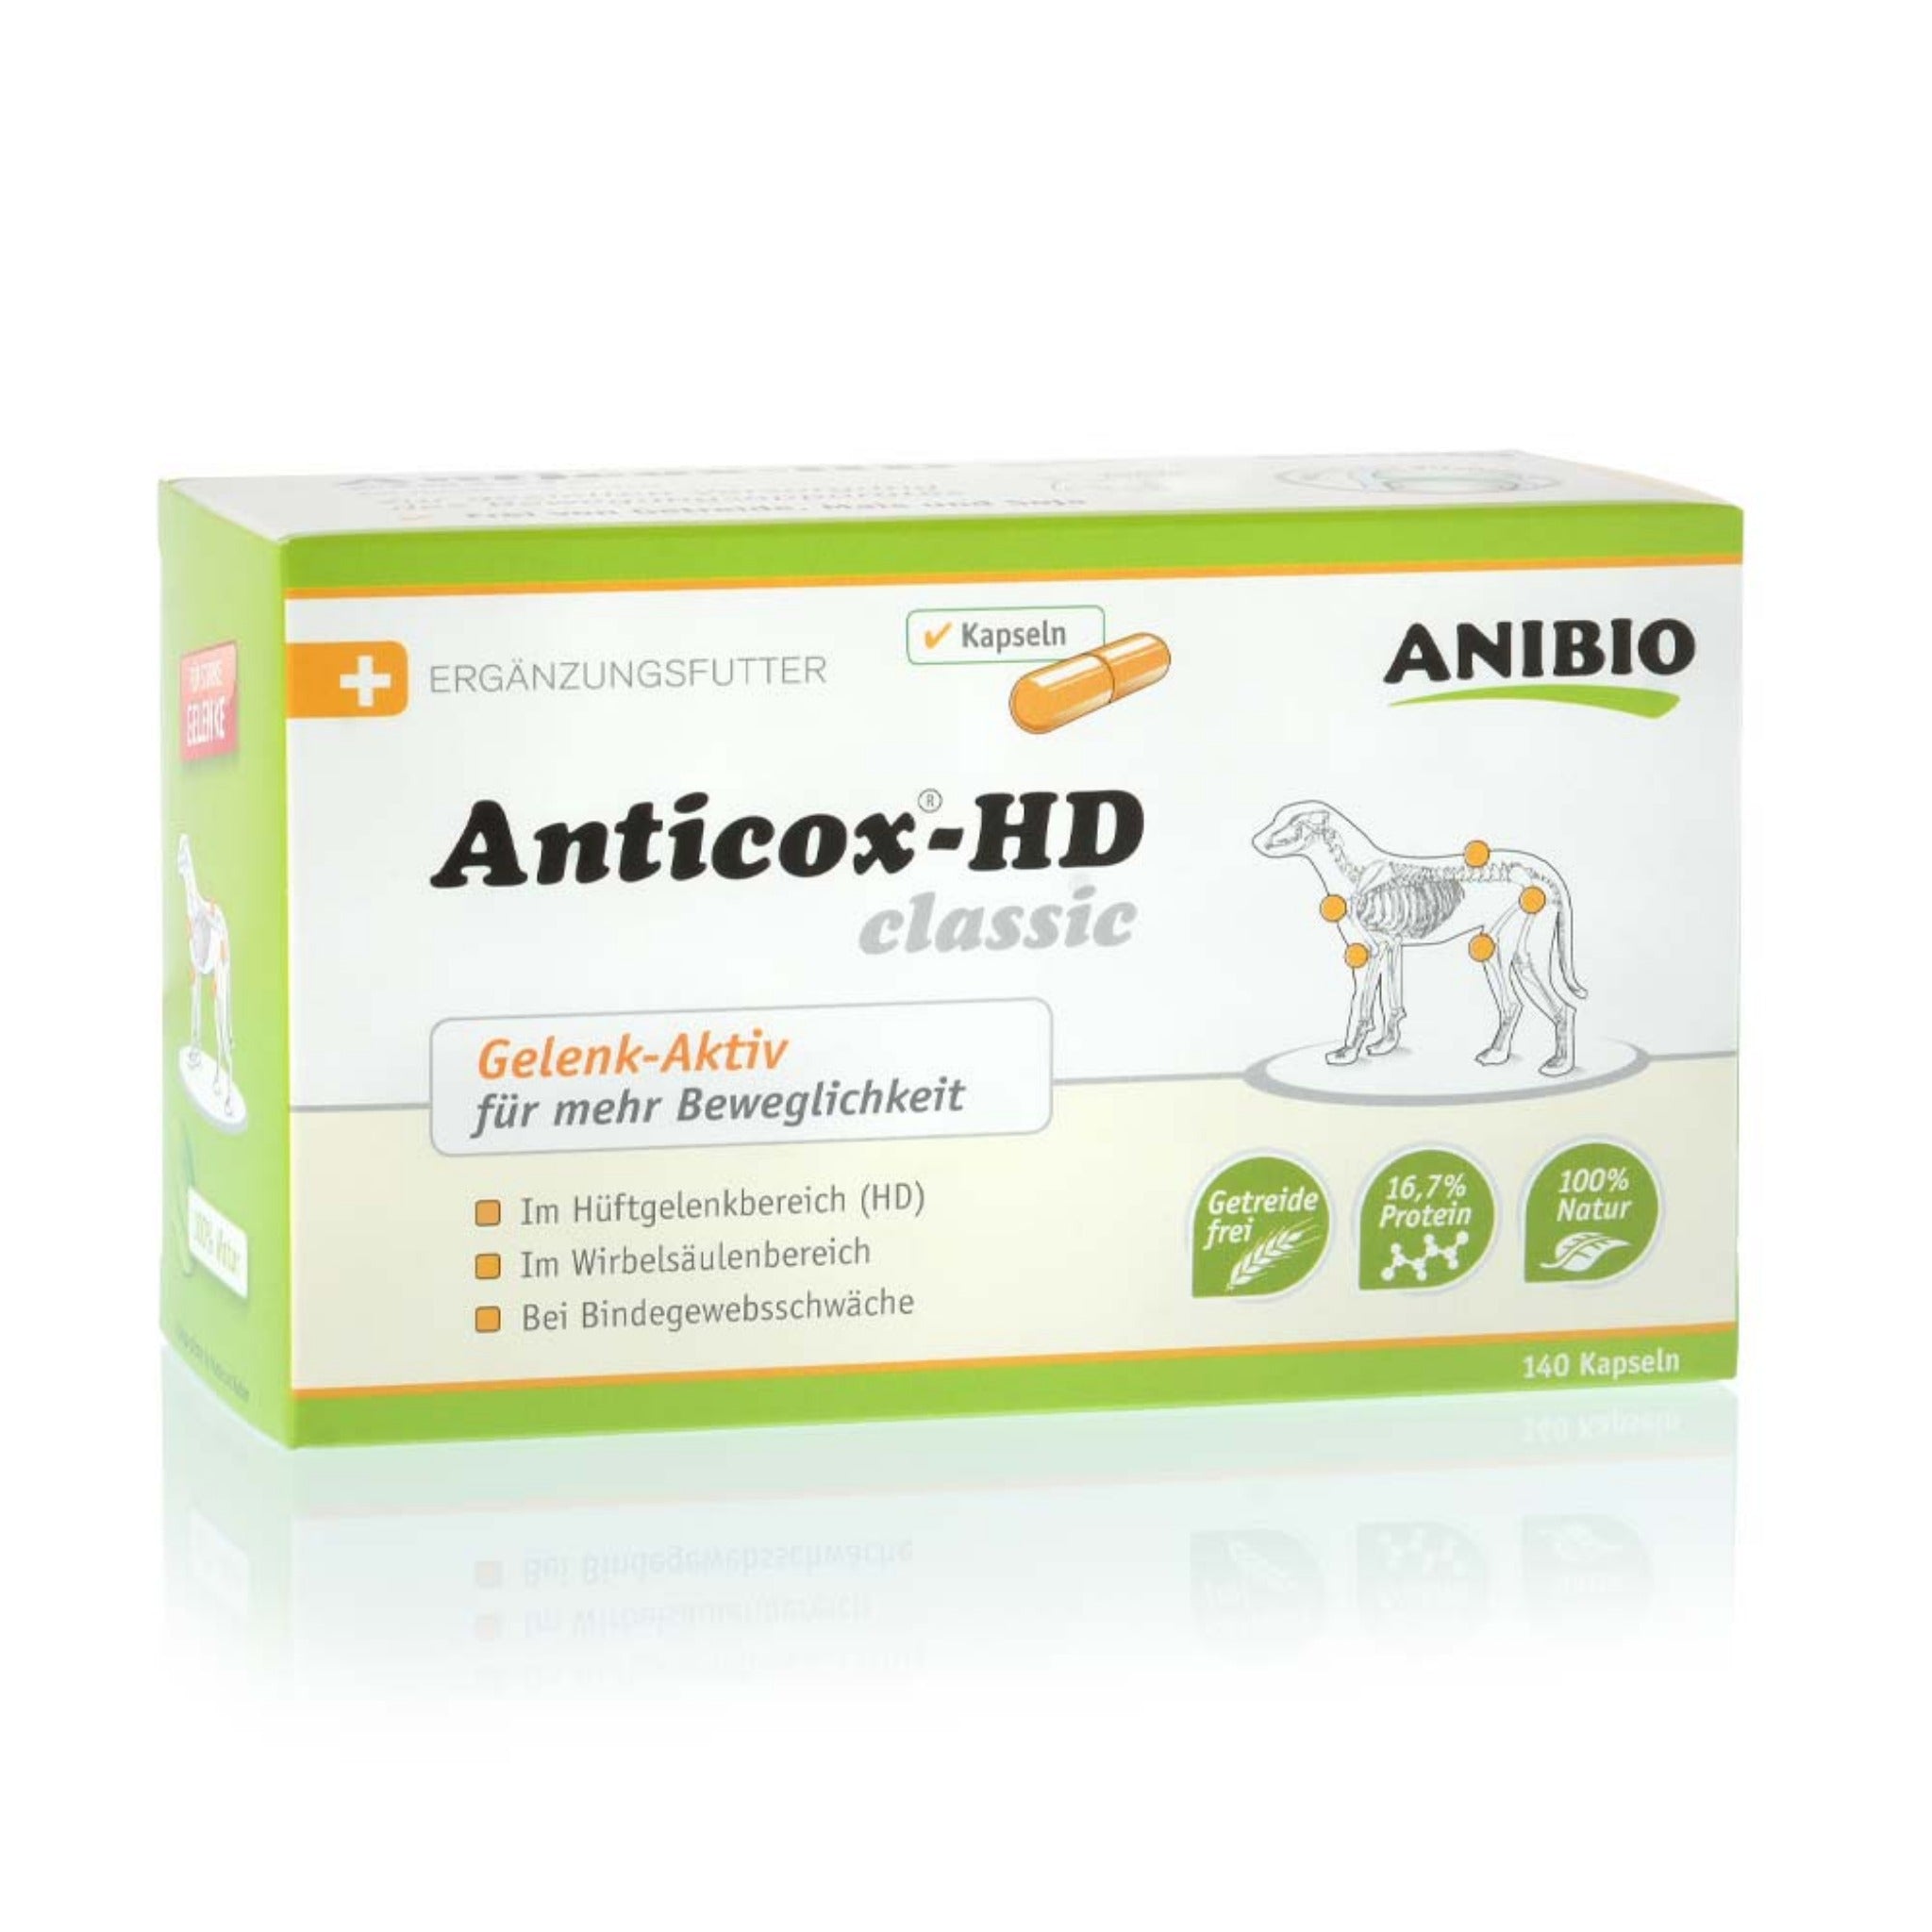 ANIBIO Anticox-HD classic Kapseln - Woofshack